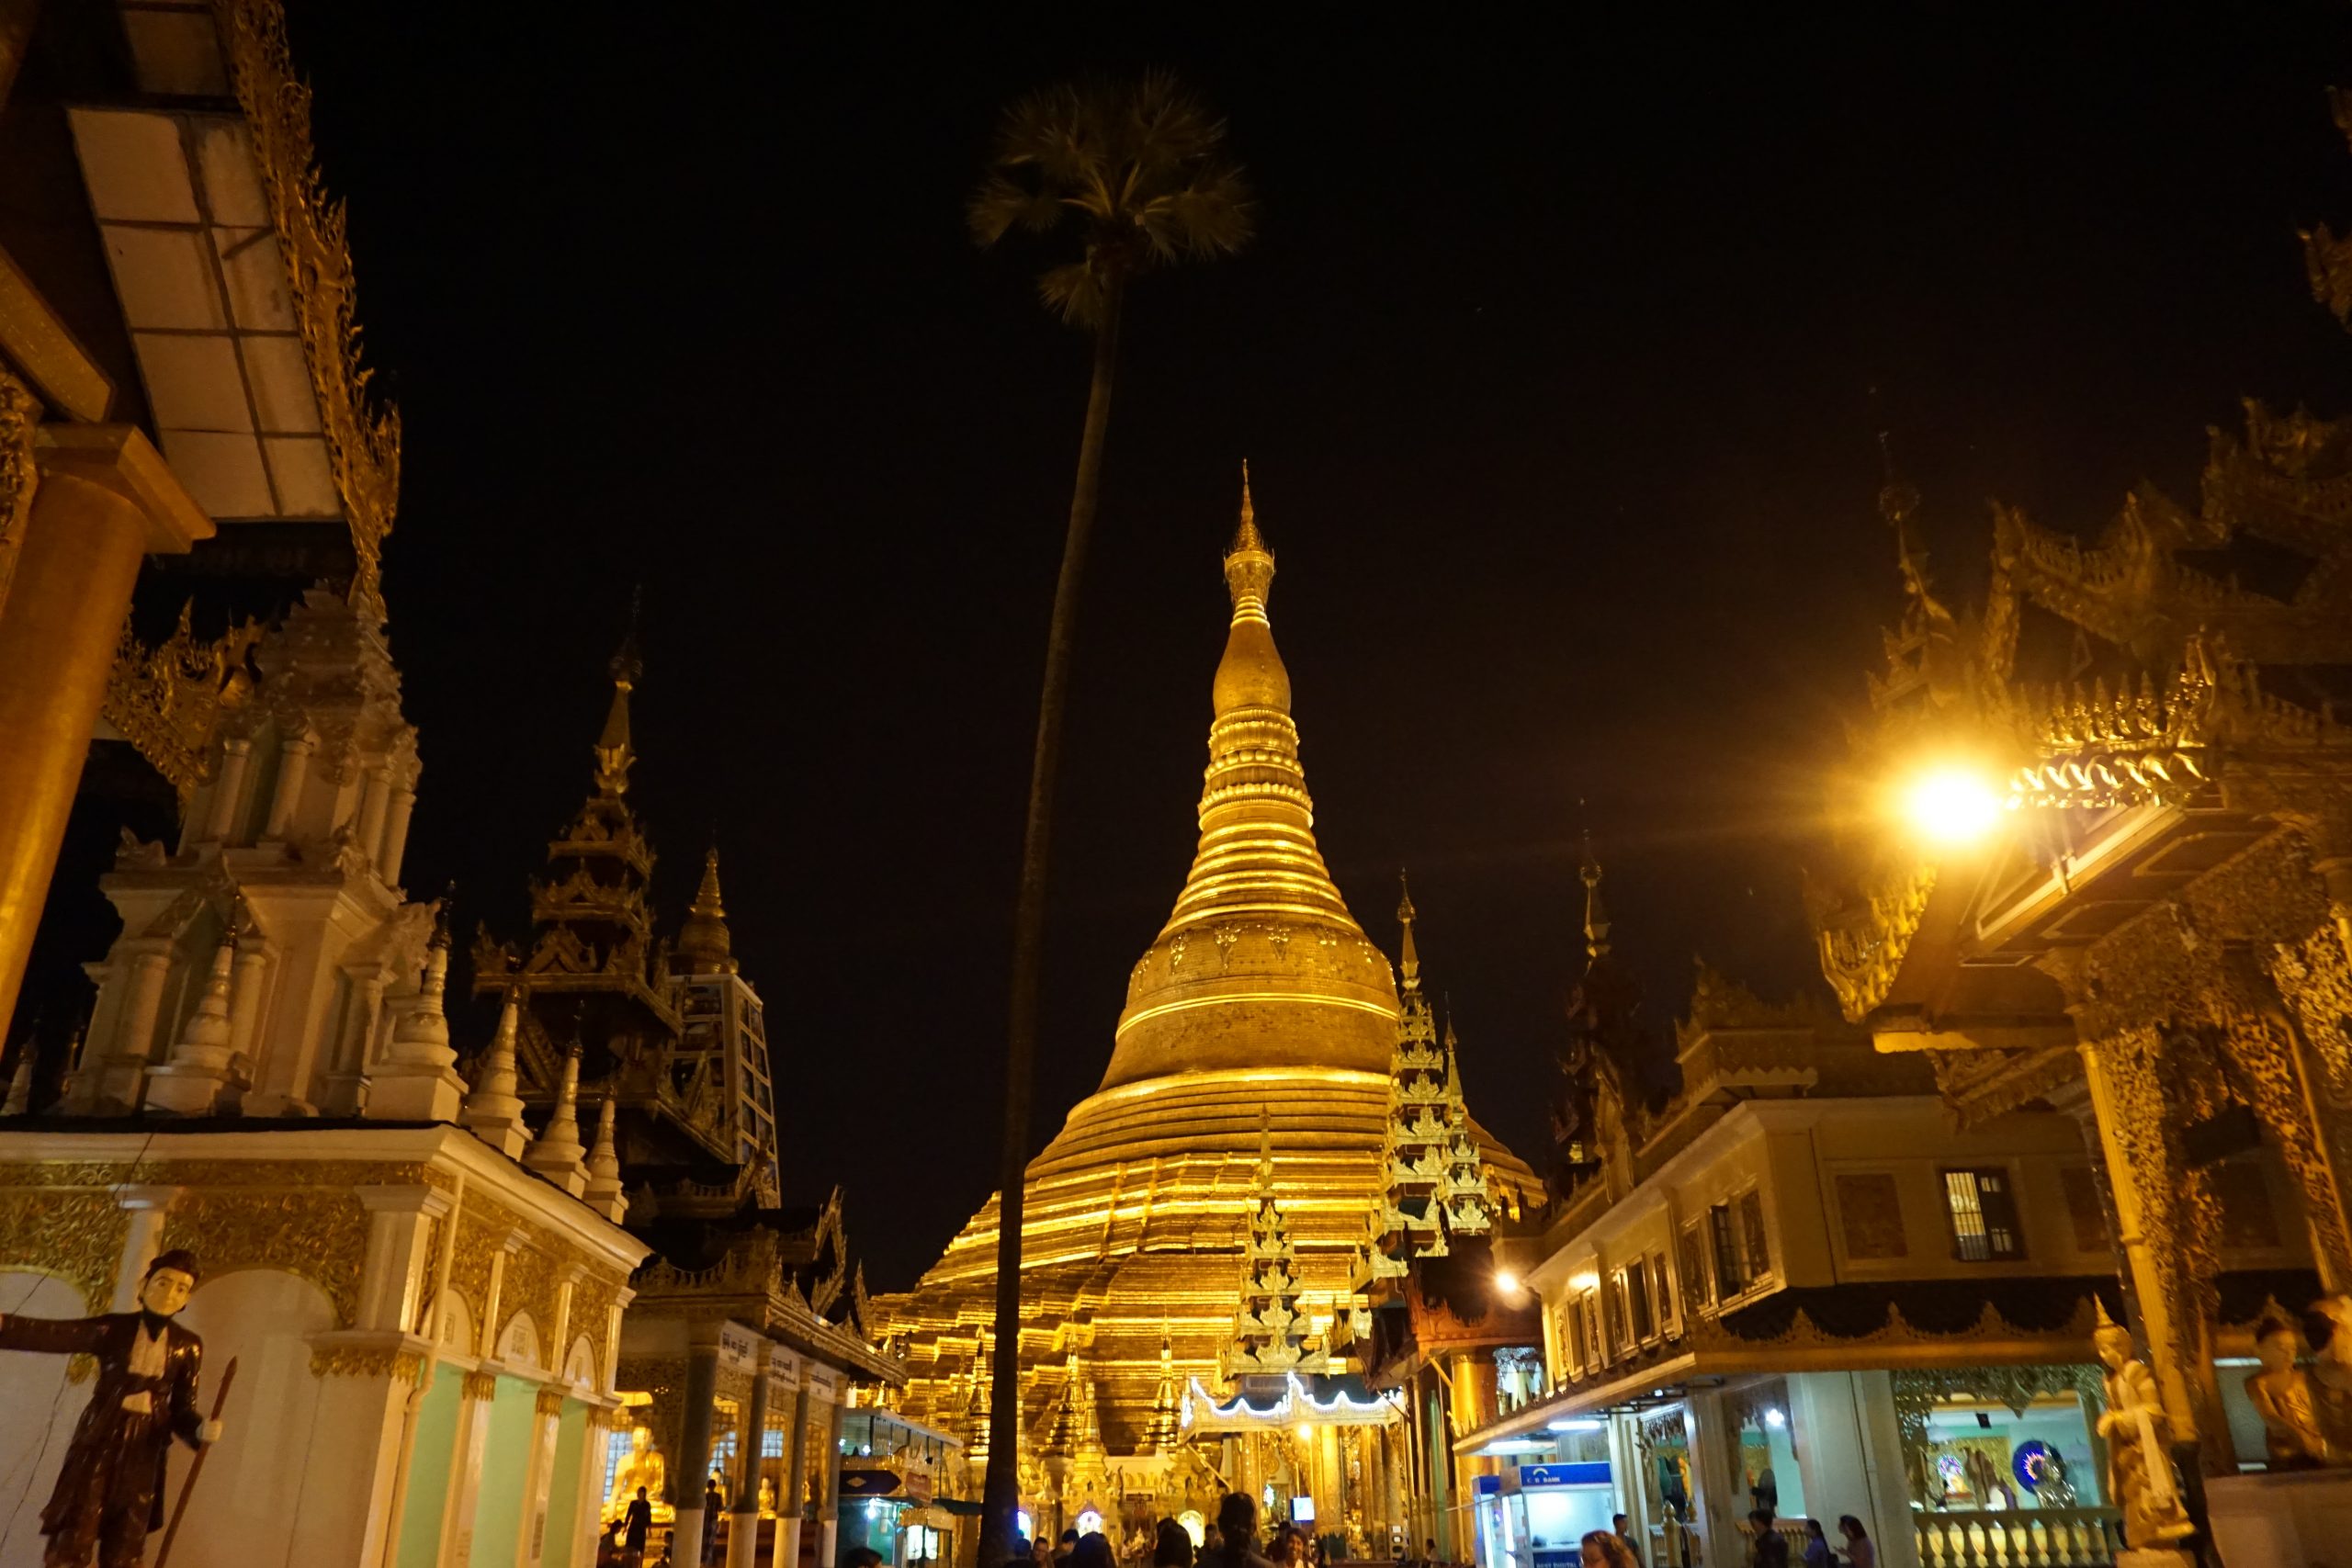 A nighttime image of illuminated Shwedagong Pagoda